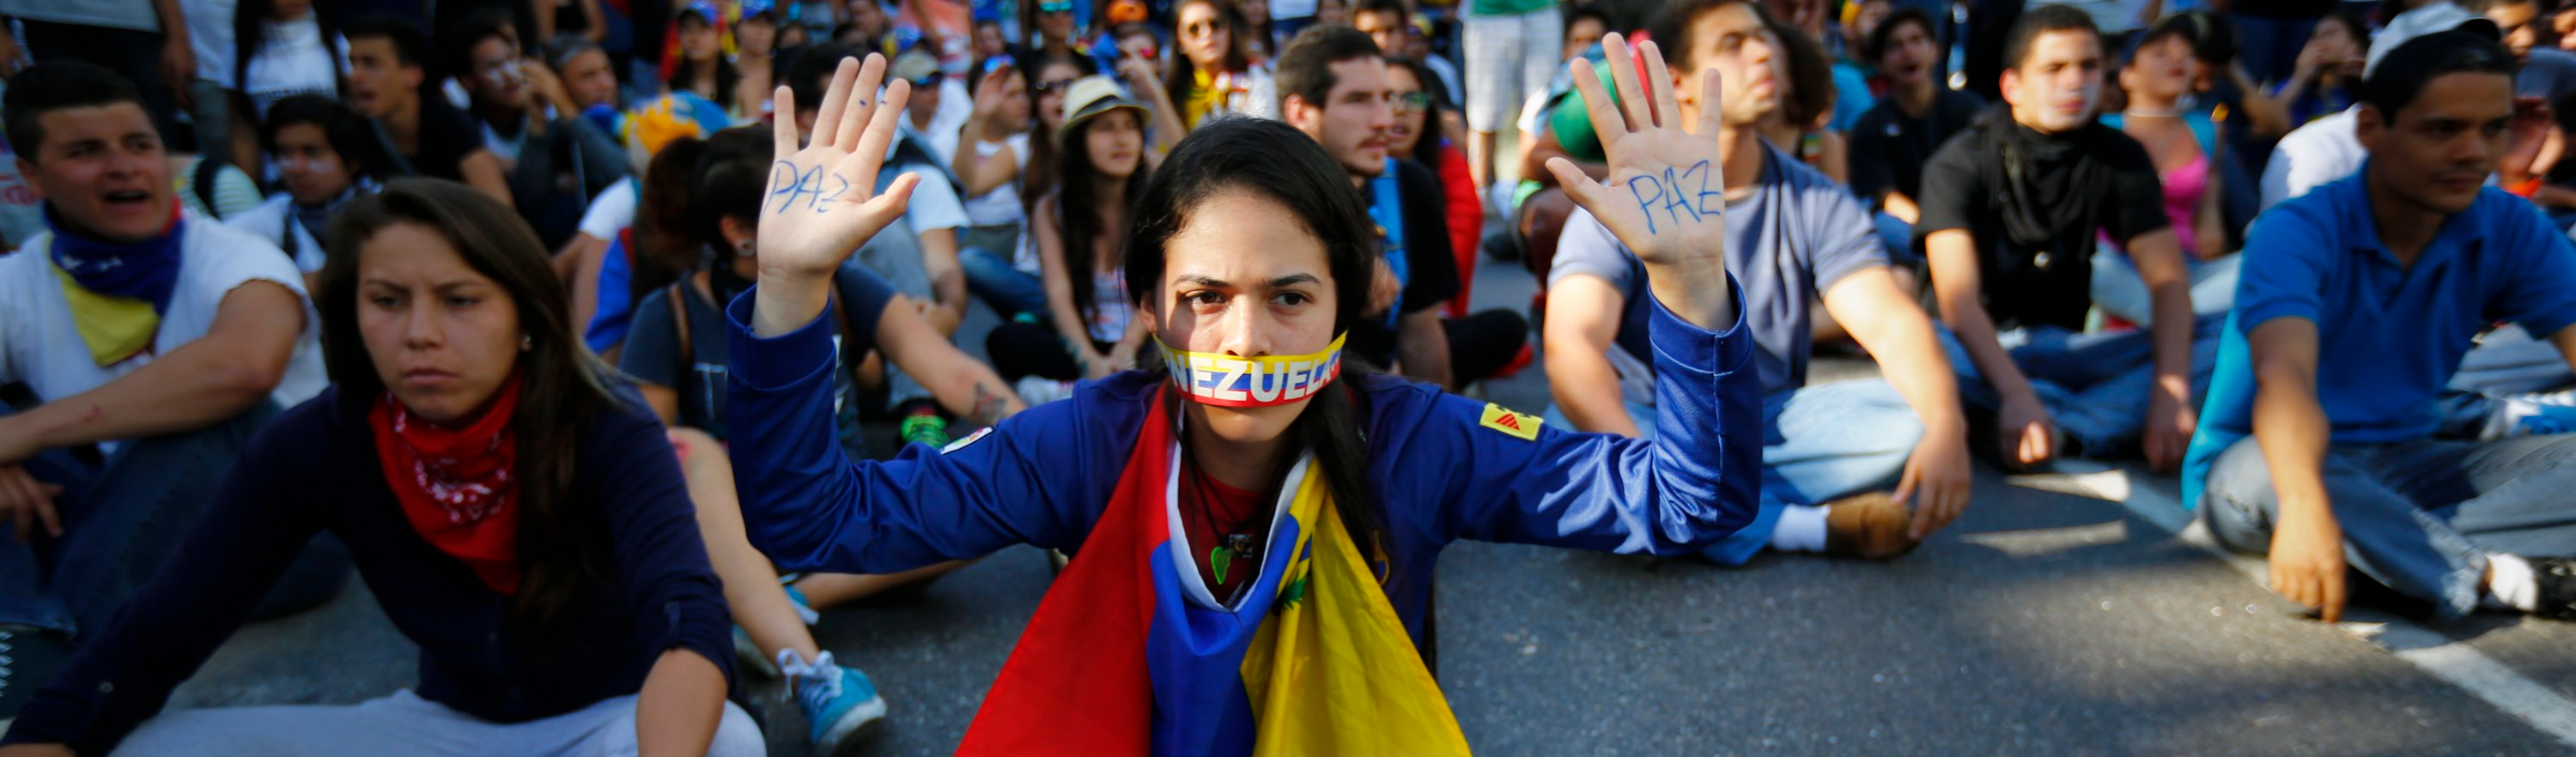 É hora de colocar um ponto final na crise que levou desordem social aos venezuelanos